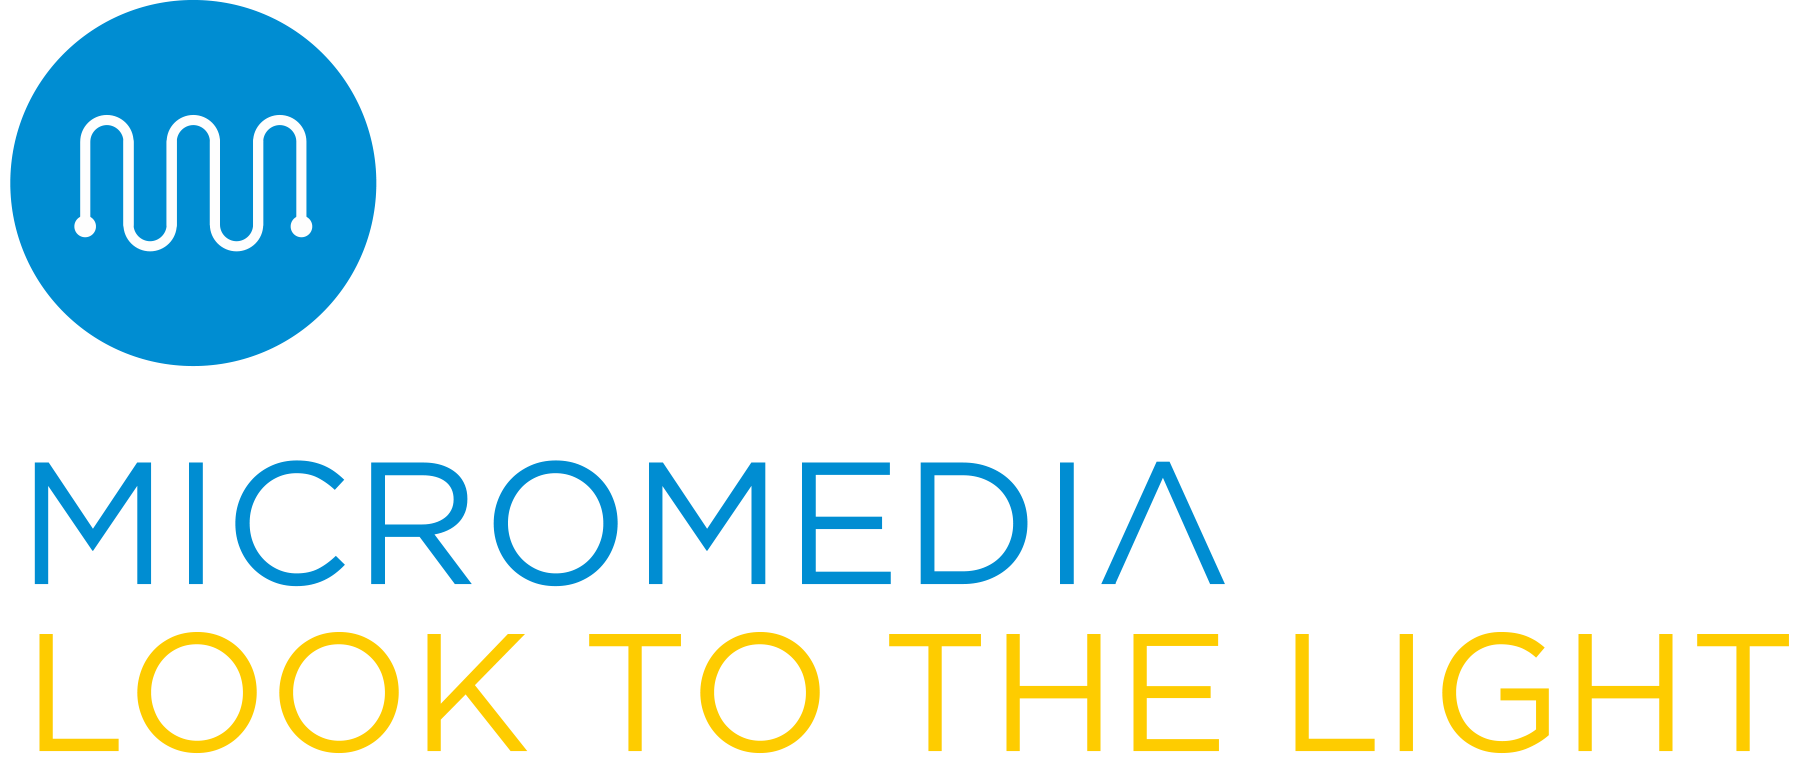 Micromedia logo updated